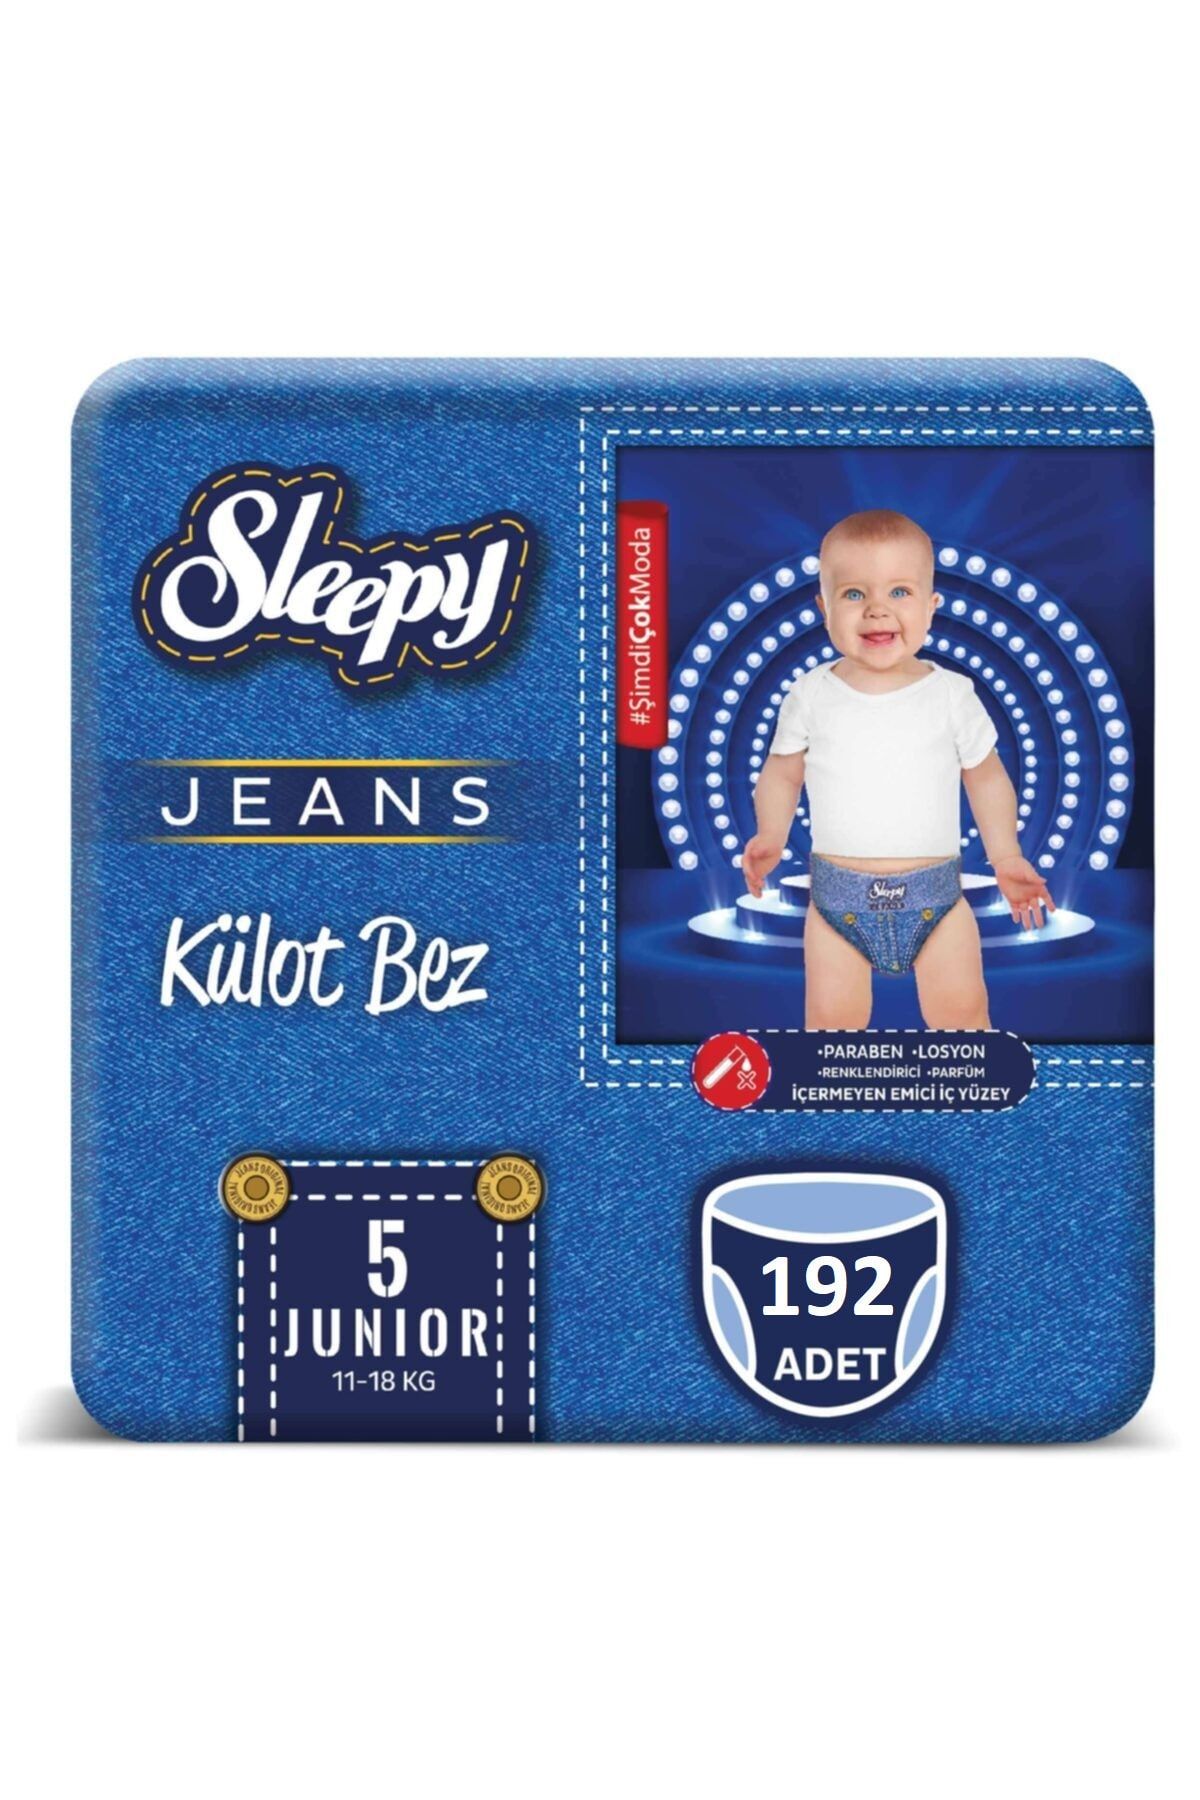 Sleepy Jeans Külot Bez 5 Beden Numara 192 Adet 11-18 Kg